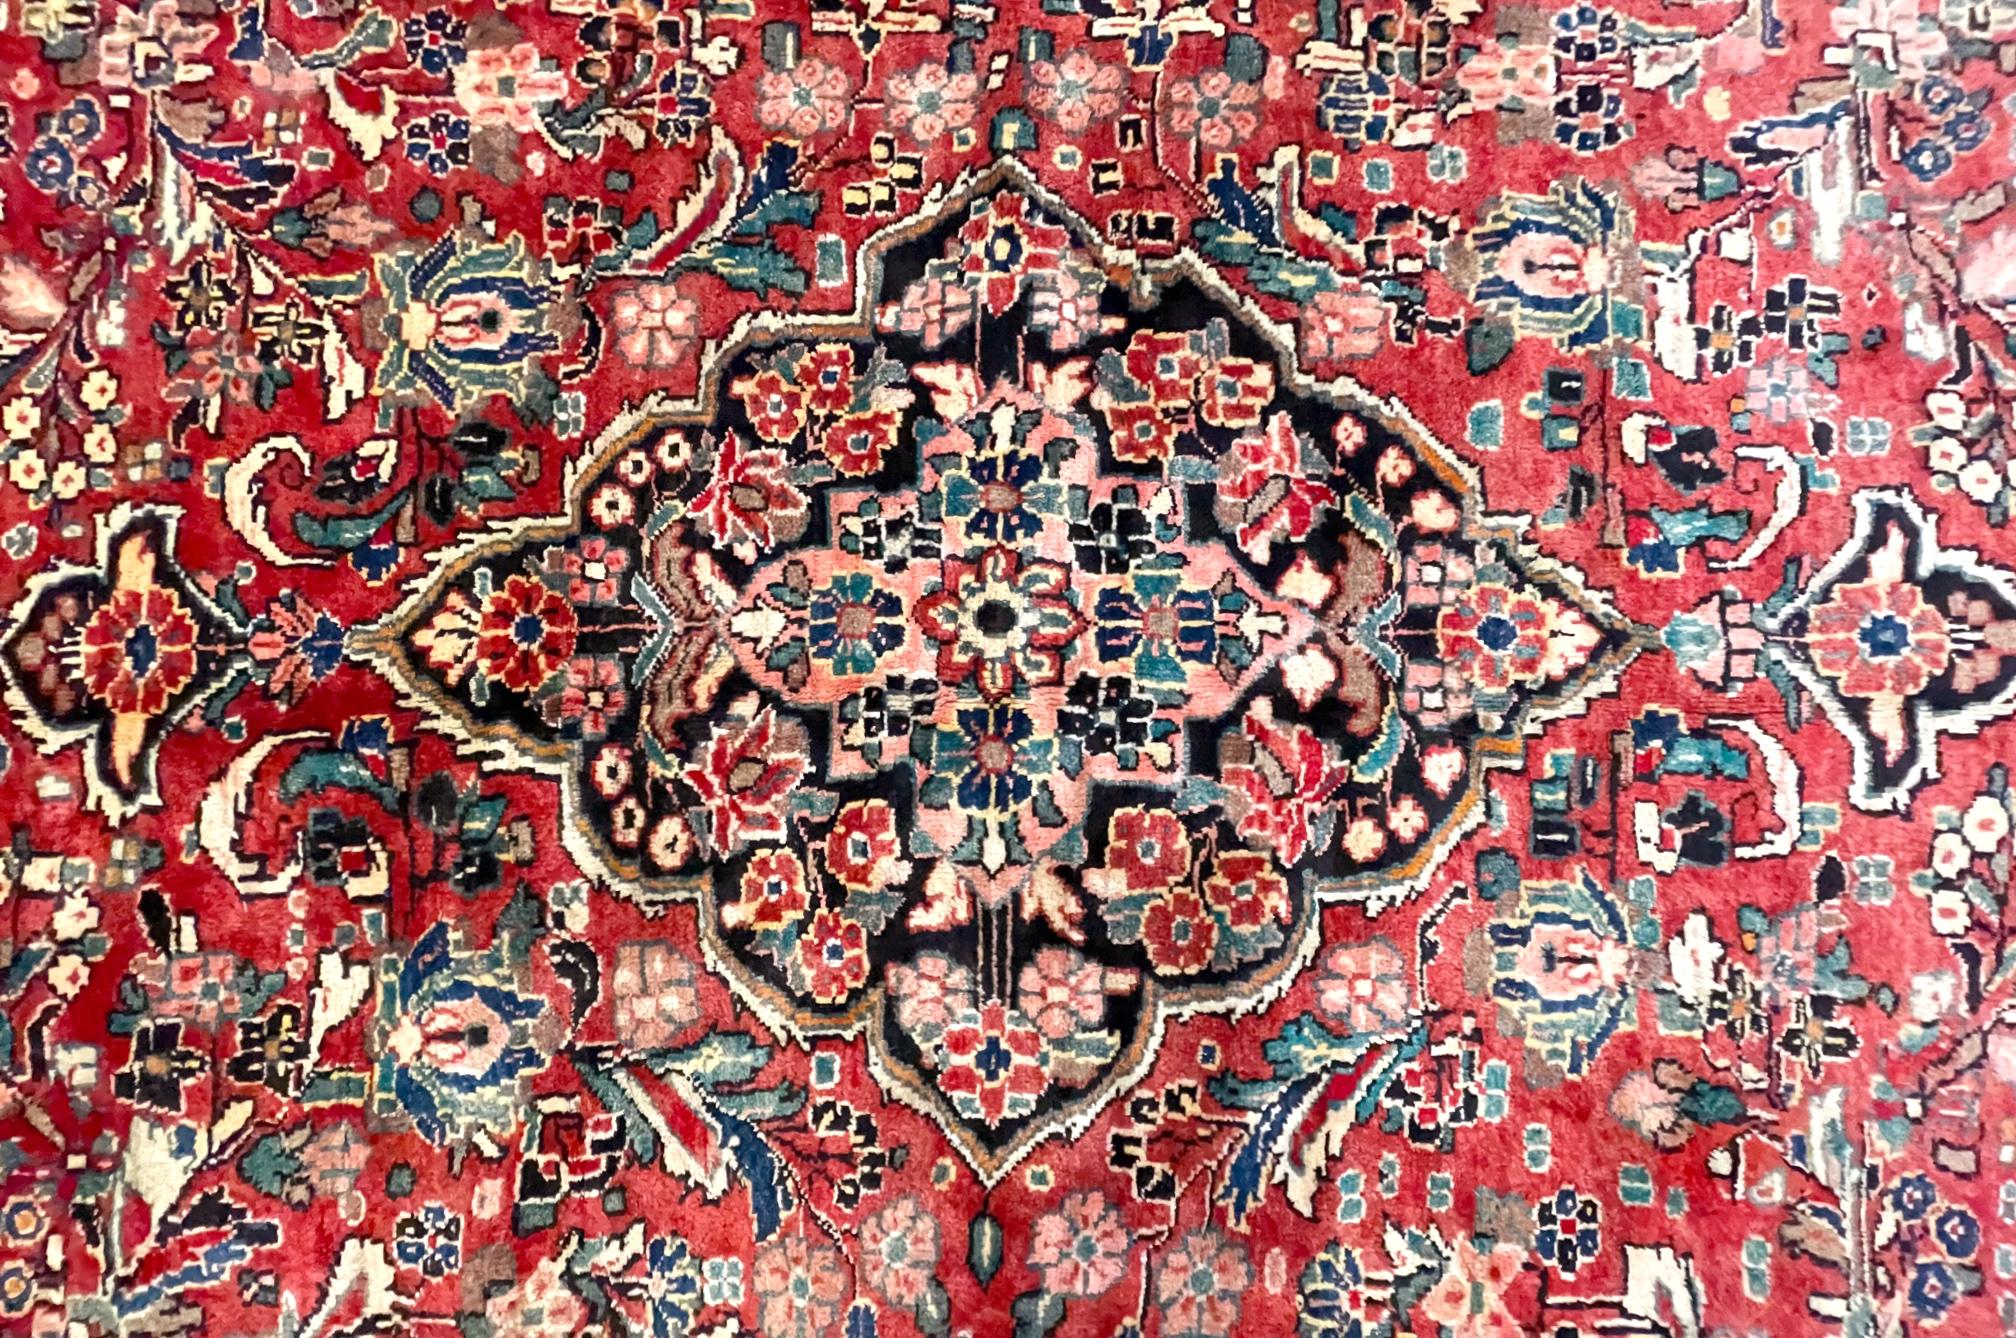 tapis persan authentique